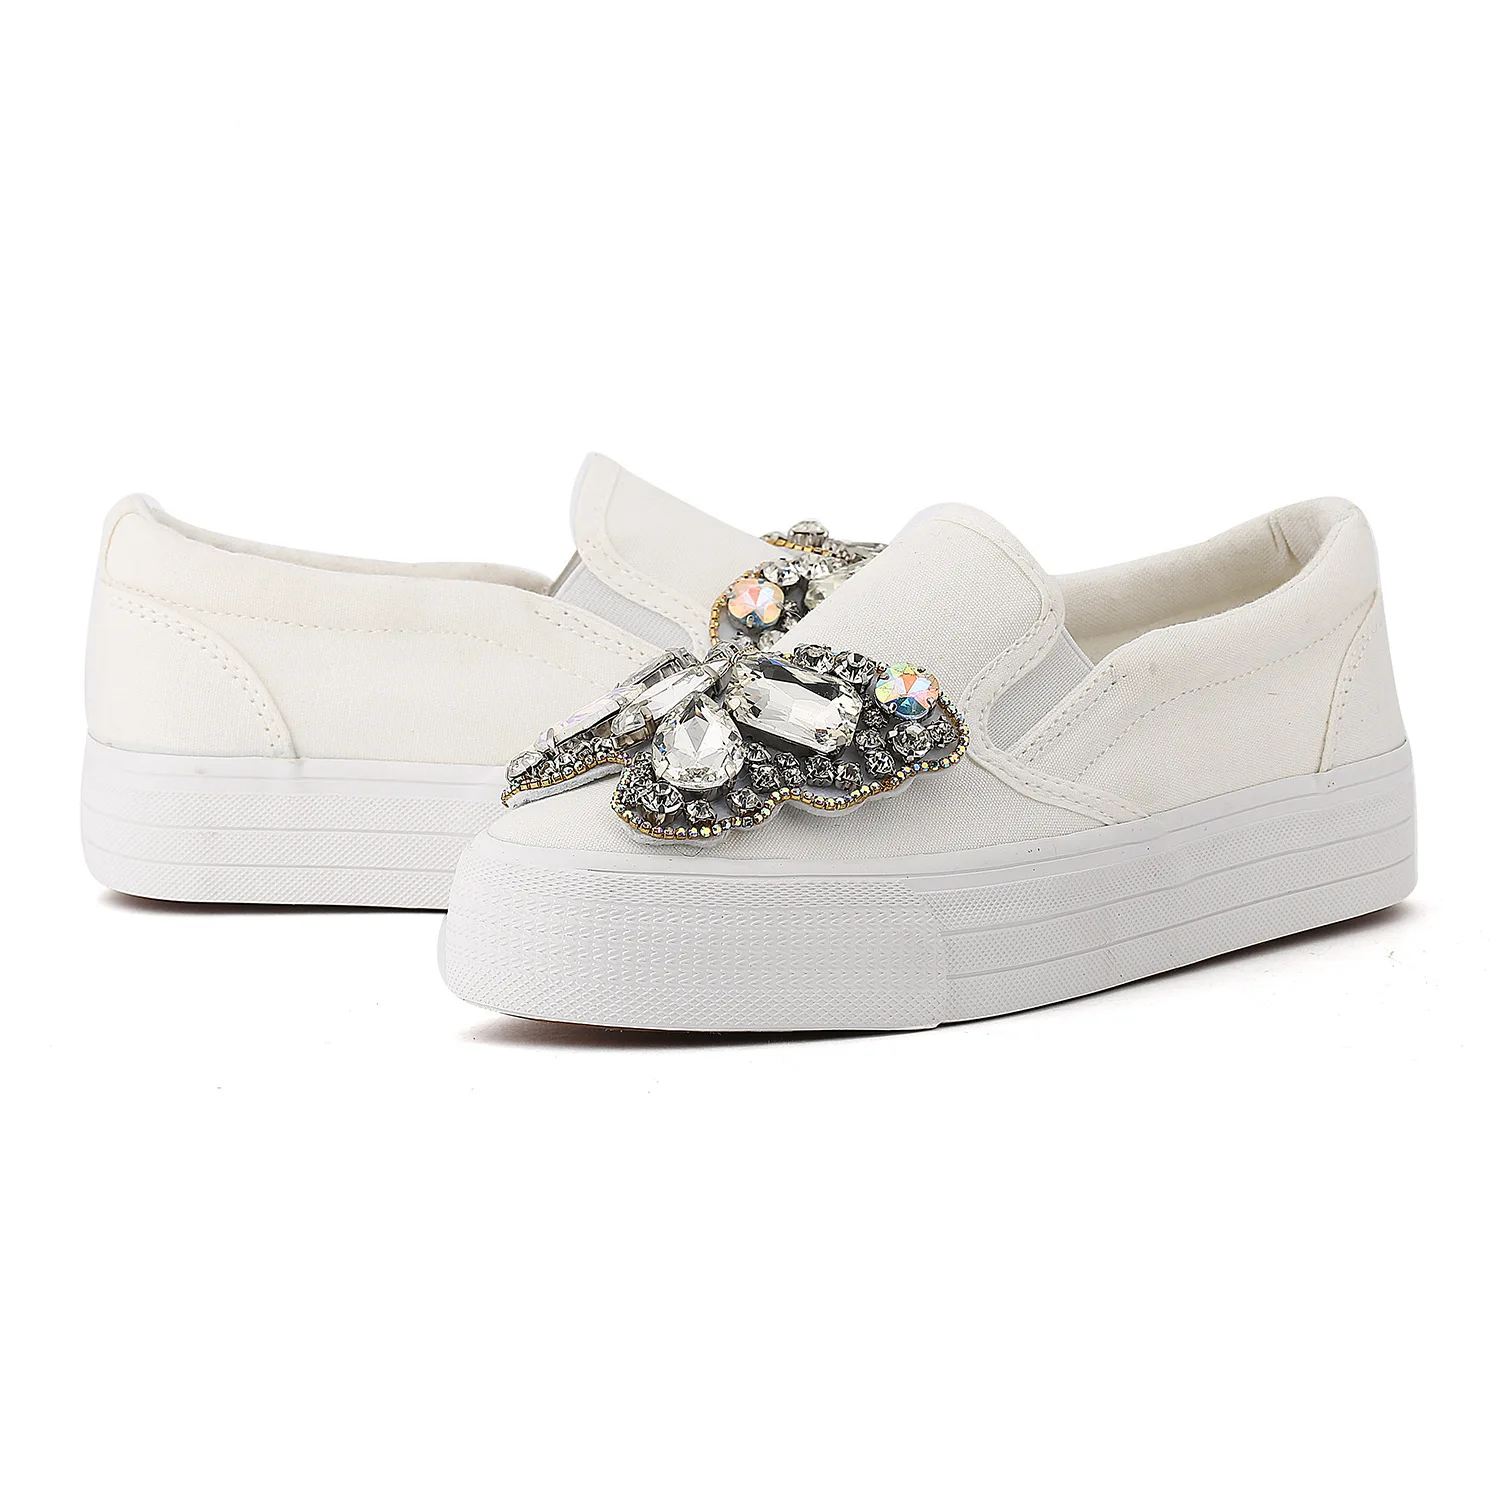 Платформа Стразы слипоны; однотонная модная обувь Элитный бренд слипоны Для женщин; обувь с украшением в виде кристаллов; обувь на платформе, с бантом, для свадьбы